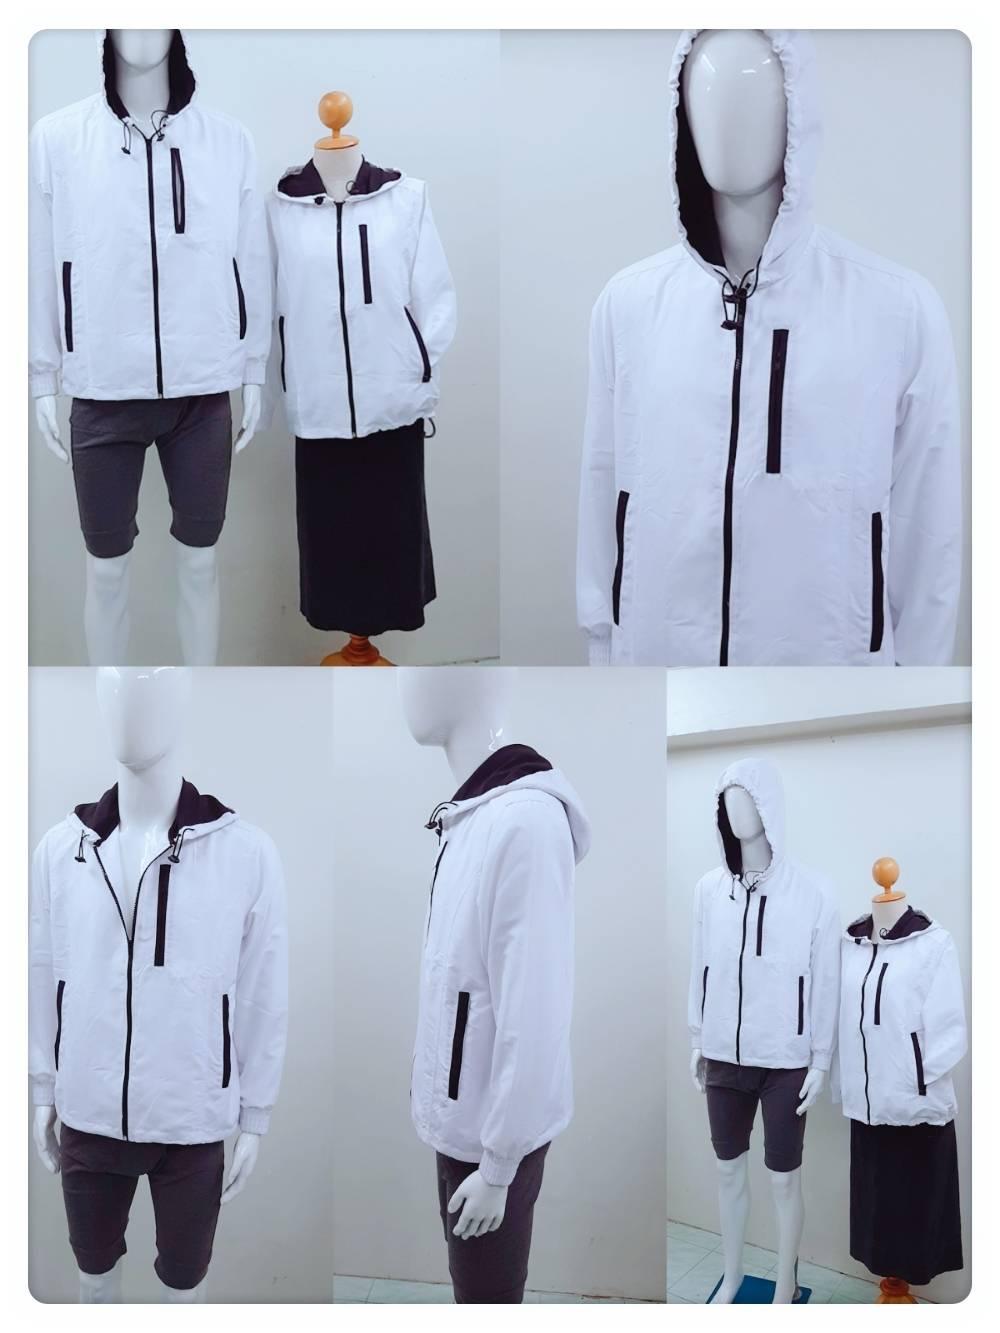 SALE++เสื้อแจ็คเก็ตผ้าร่ม สีขาวมีฮู้ด แดดกันลมคุณภาพดีจากโรงงานผู้ผลิตครบวงจรในไทย